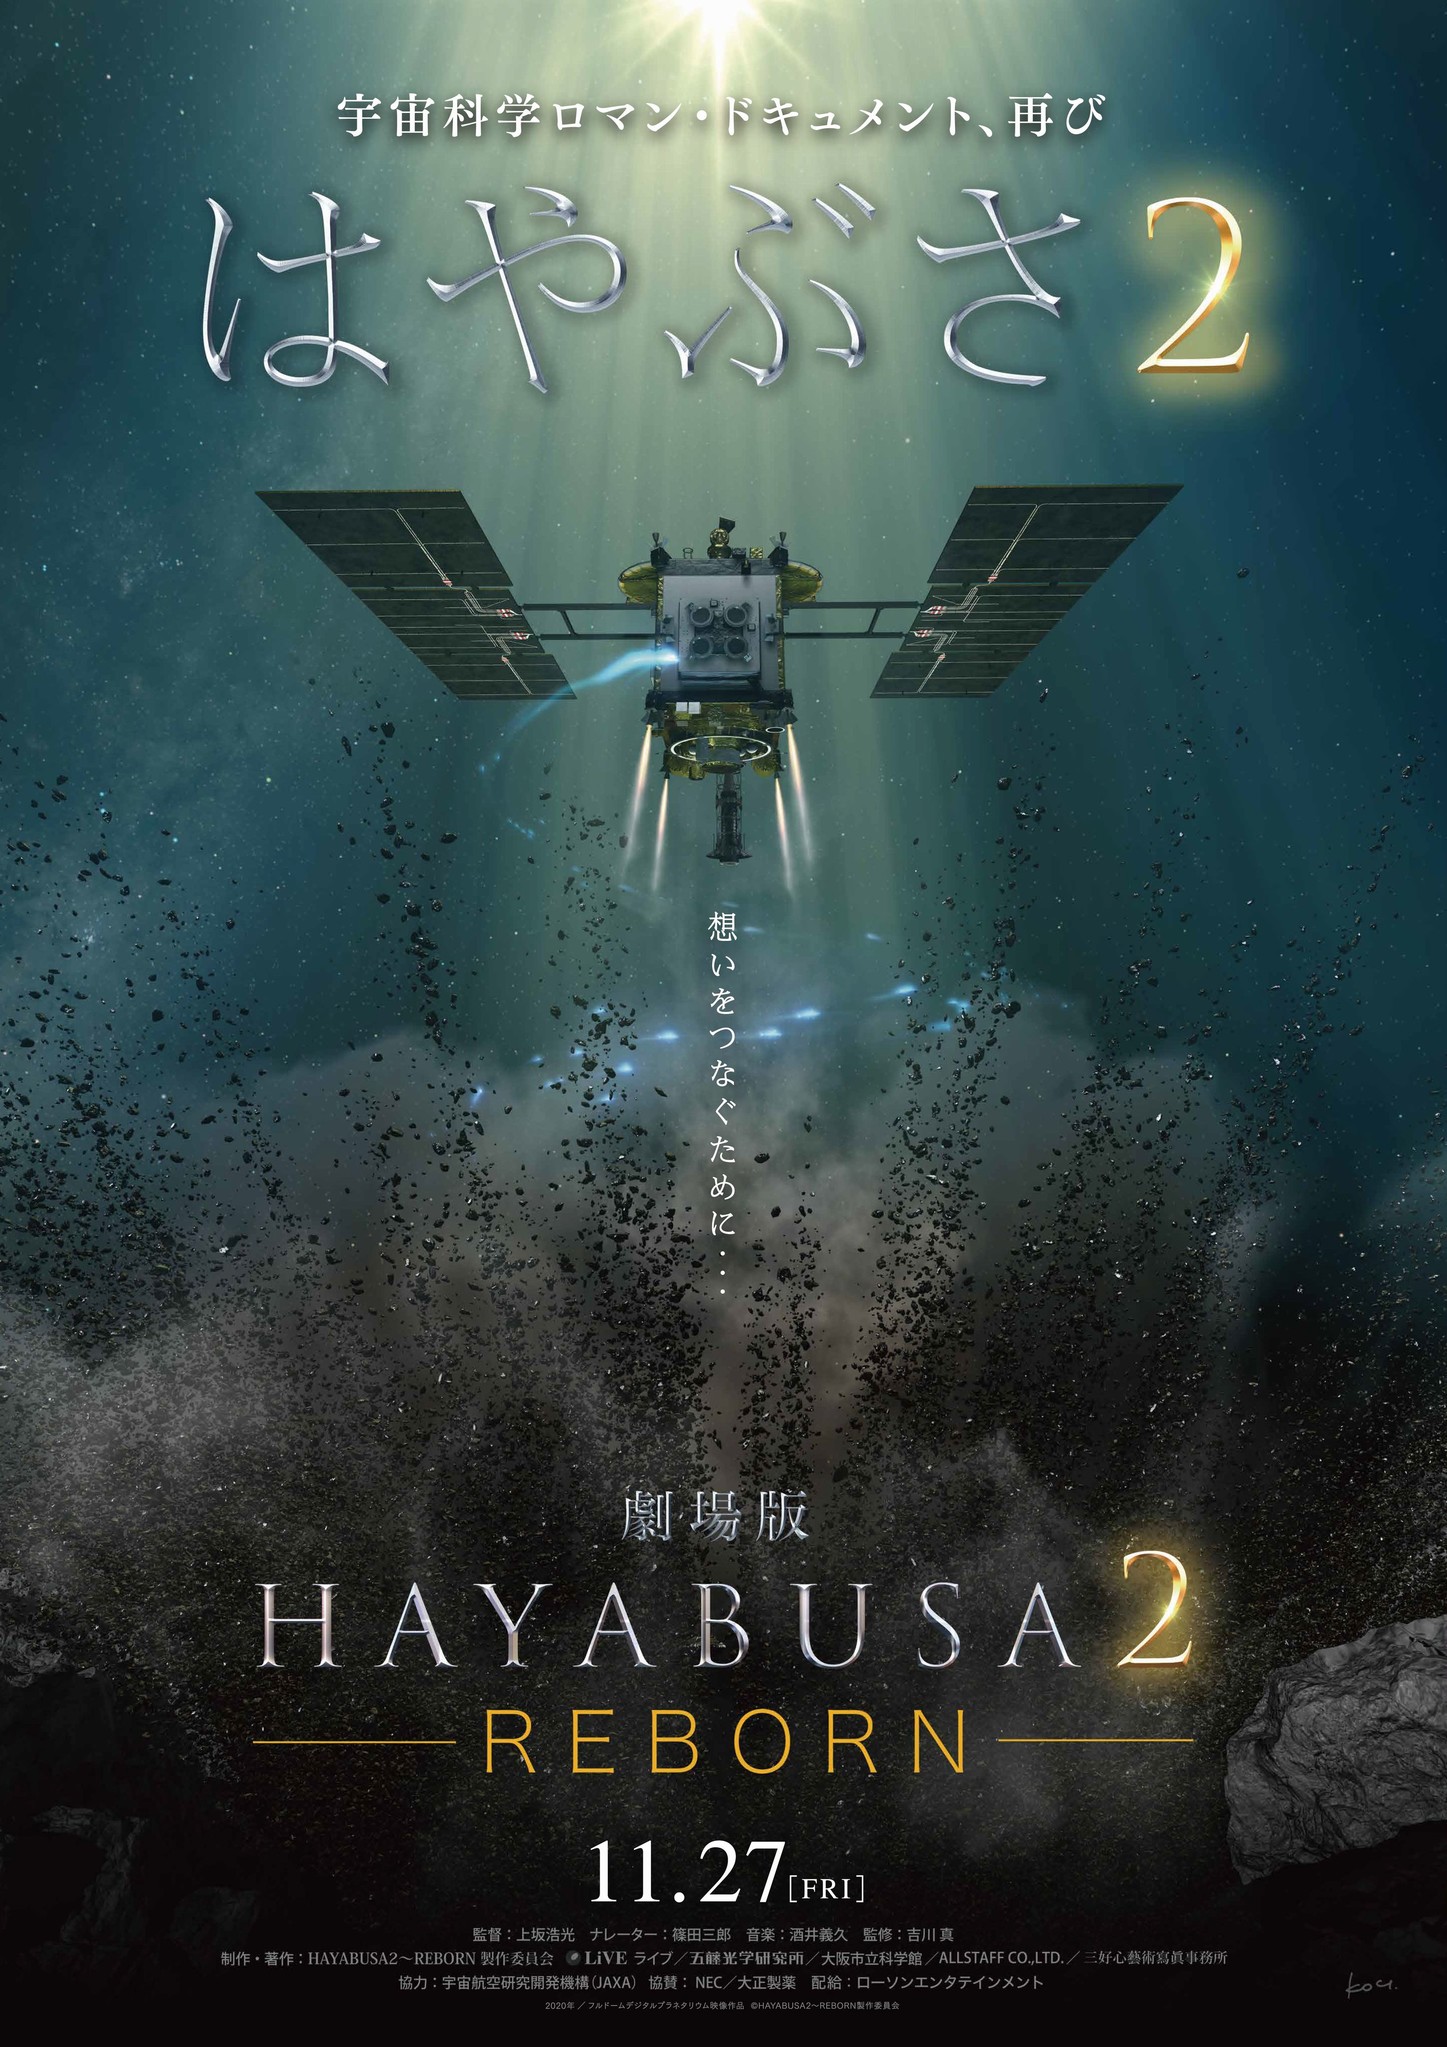 小惑星探査機 はやぶさ２ 12月6日 地球帰還記念 劇場版hayabusa２ Reborn 11月27日 金 劇場公開決定 株式会社ローソンエンタテインメントのプレスリリース